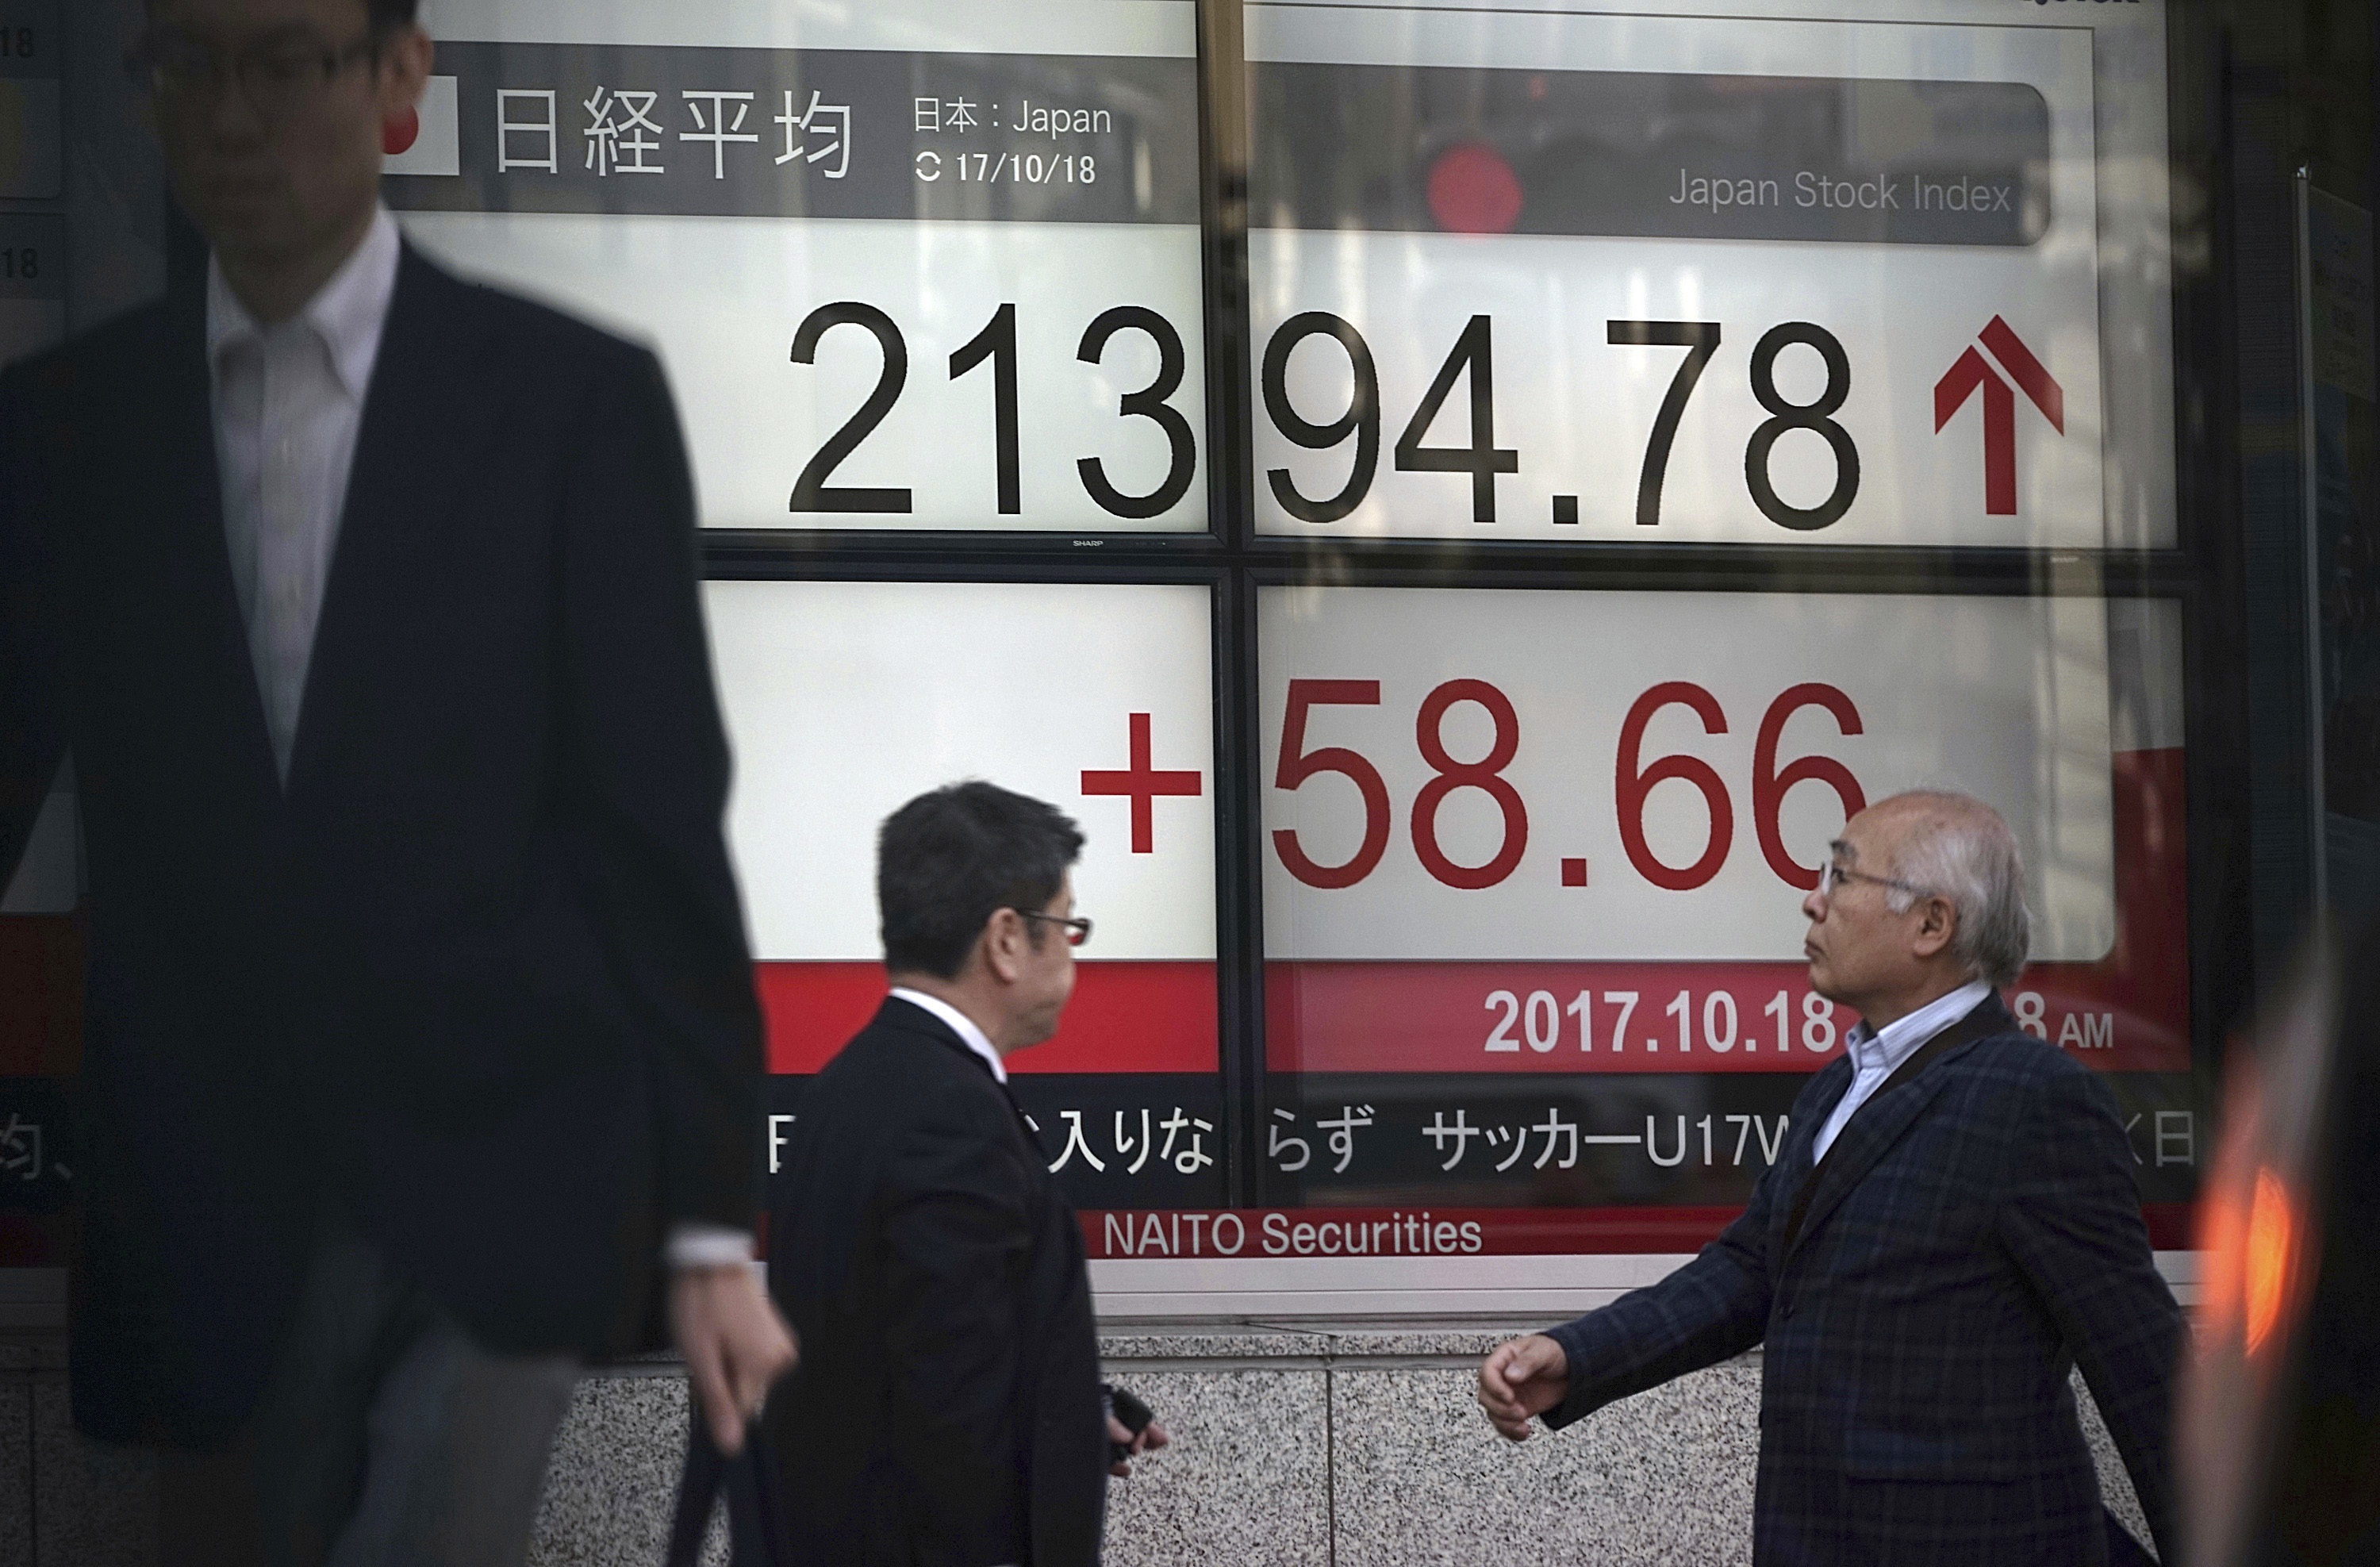 Nikkei cierra en máximos de 21 años, apoyado en resultados empresariales